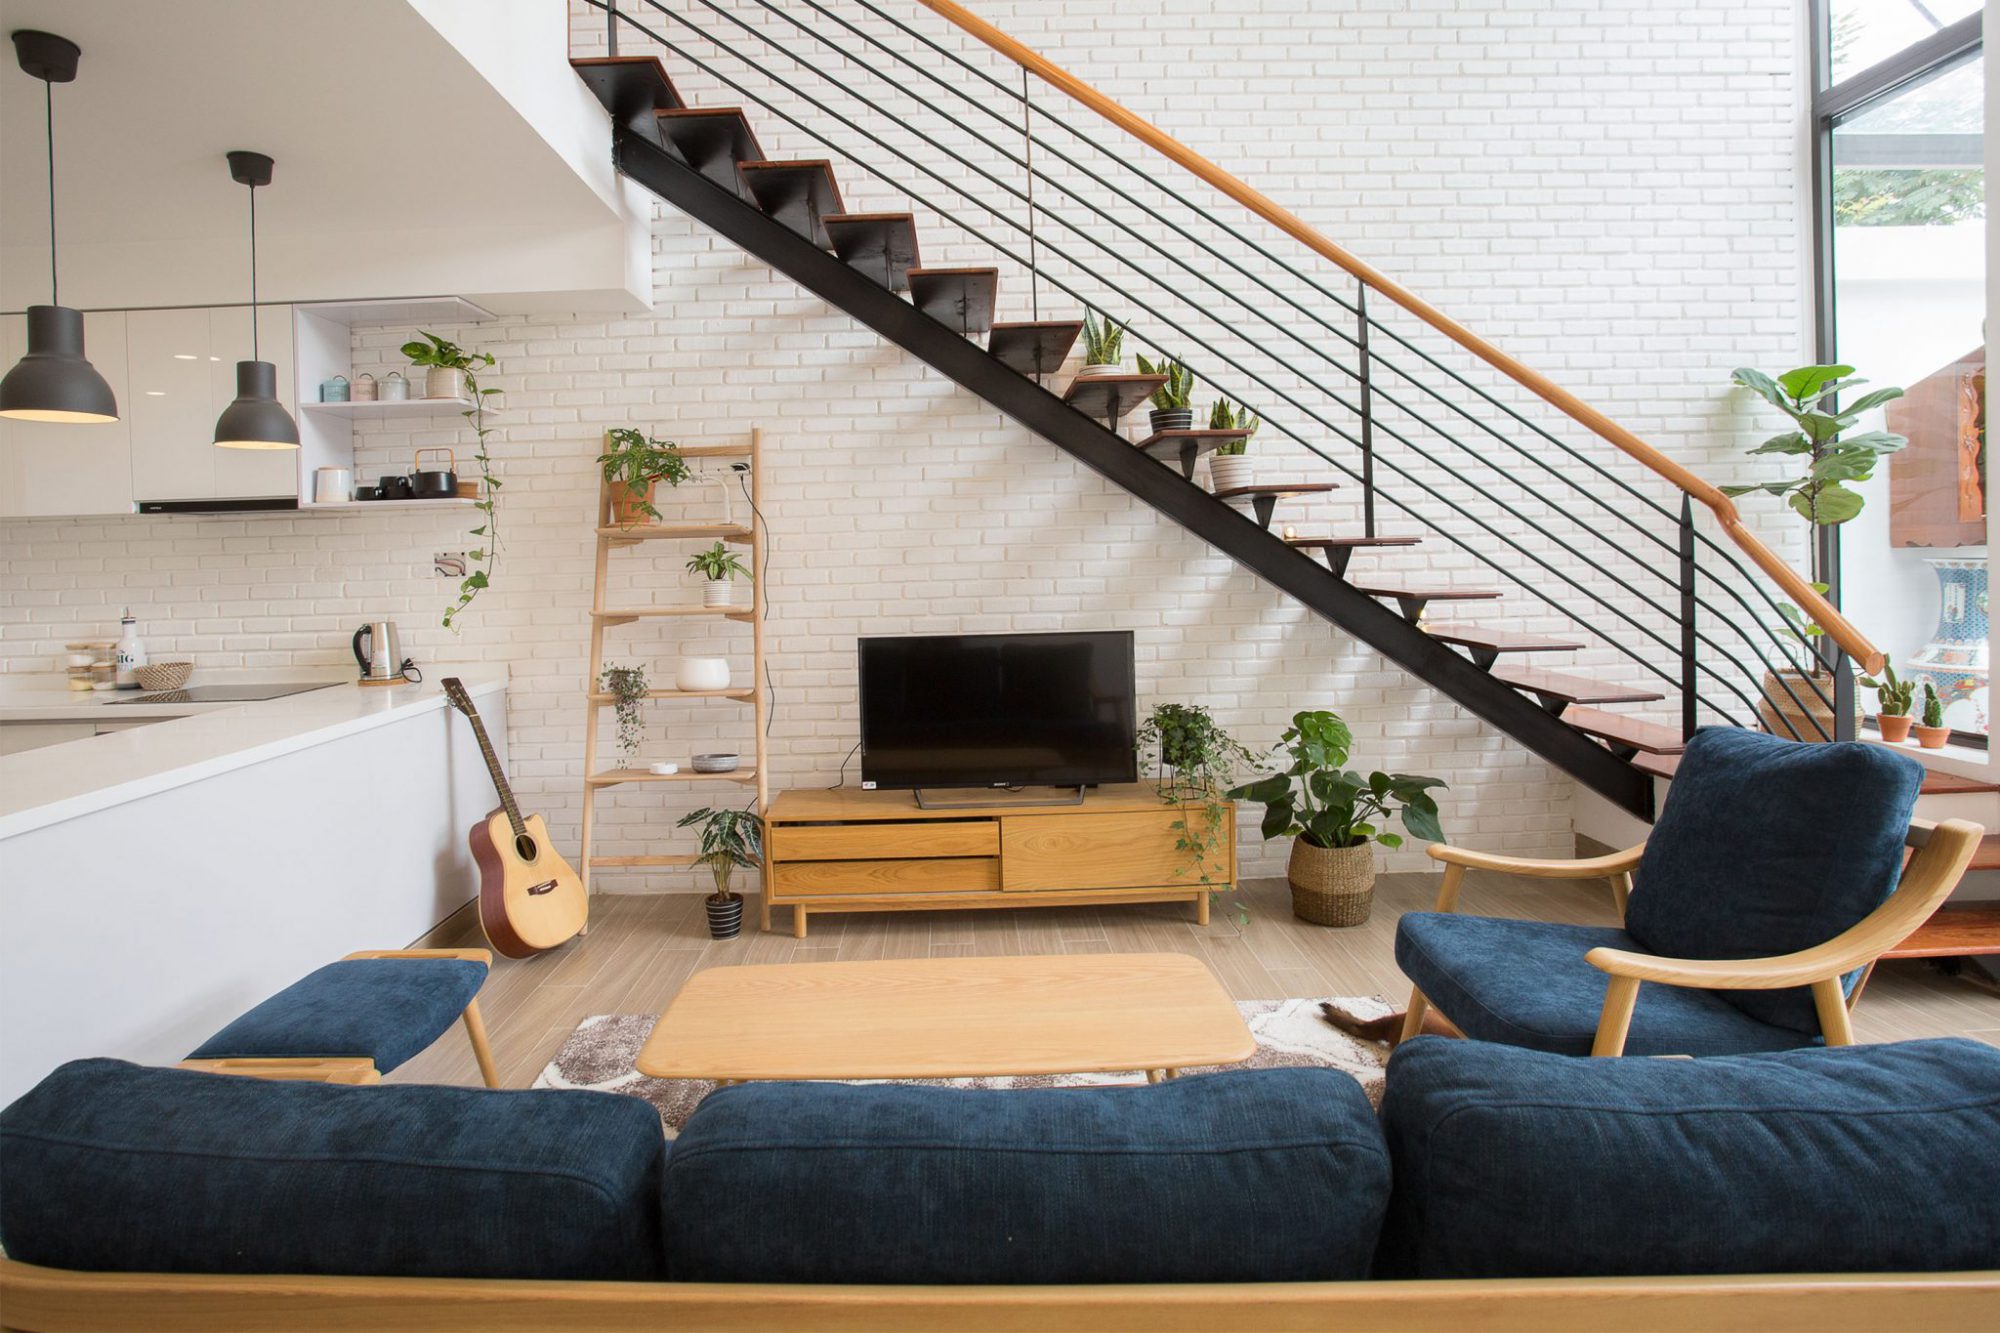 Trong số các phong cách thiết kế nội thất, phong cách hiện đại rất phù hợp với những không gian nhỏ